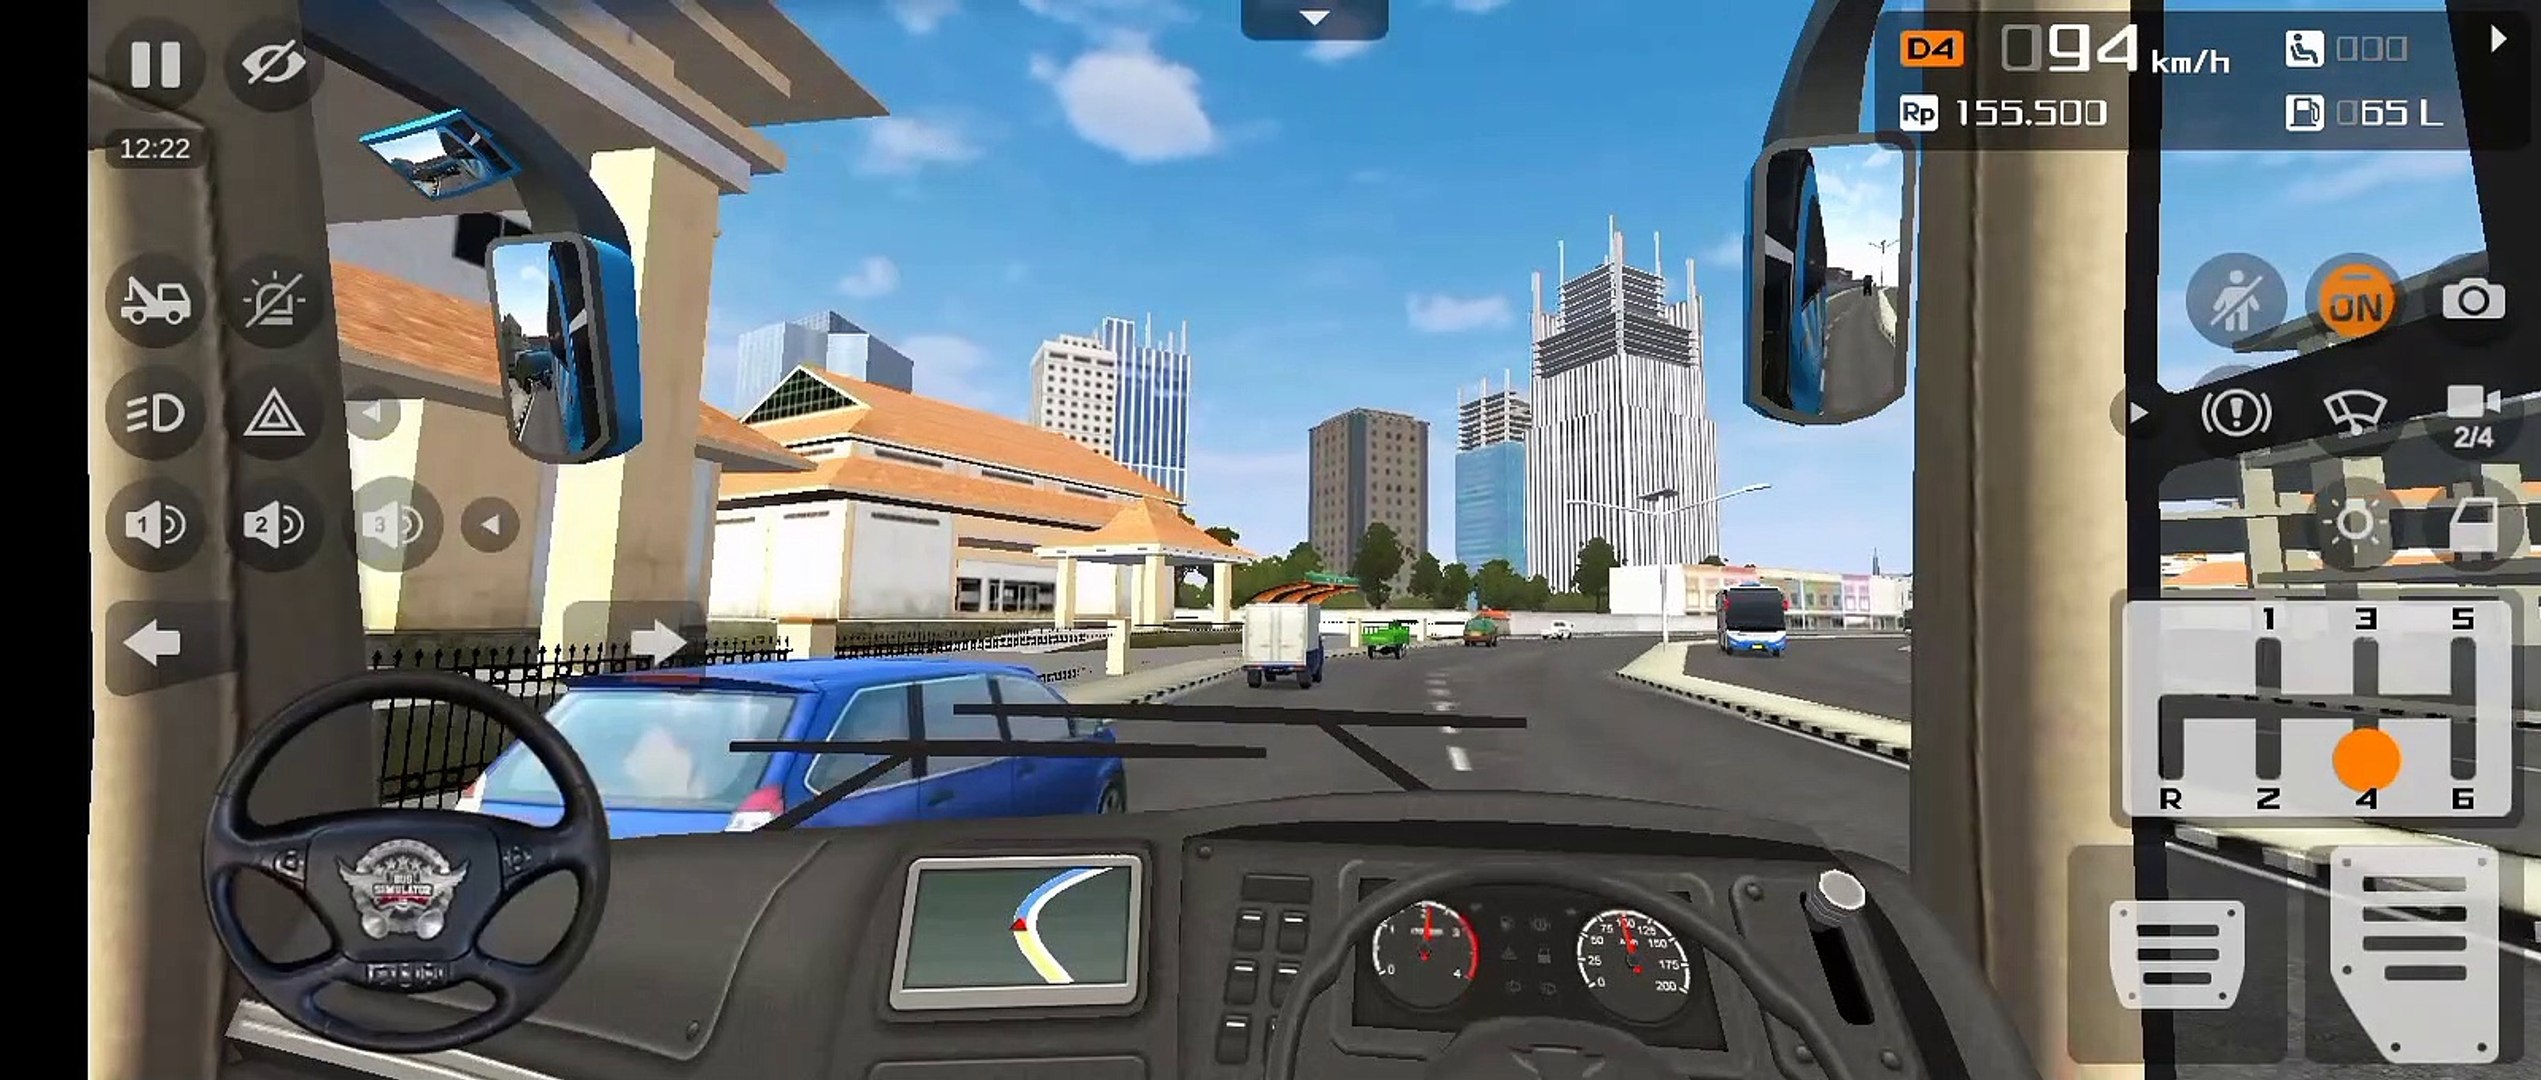 Bus simulation Indonesia